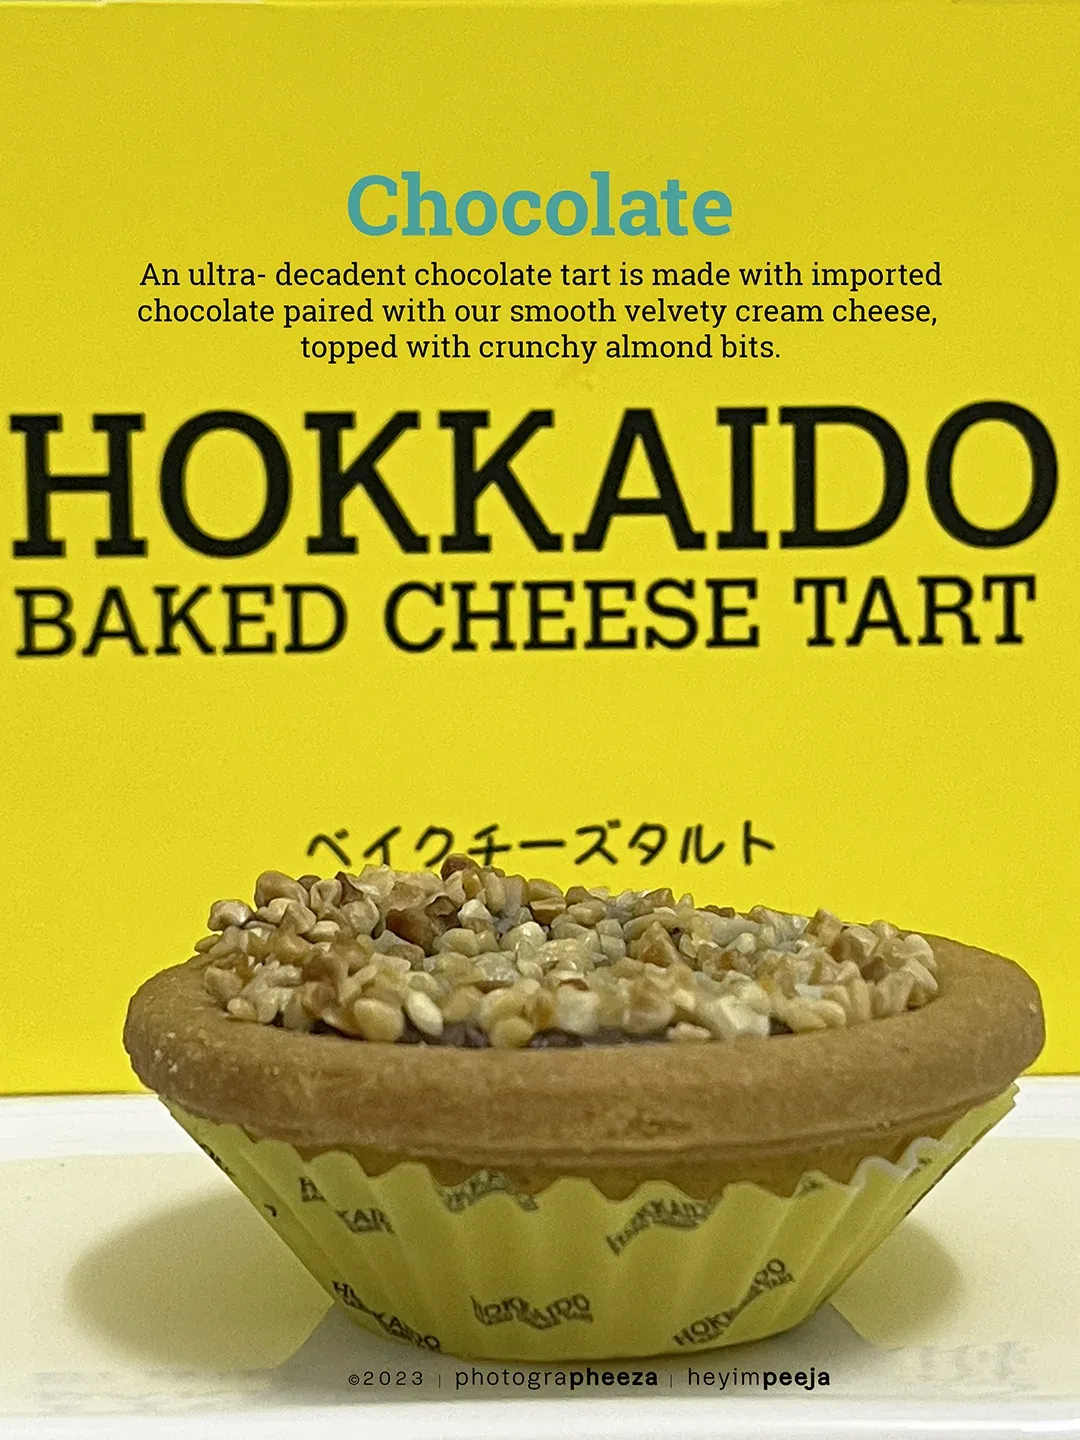 Chocolate Hokkaido Baked Cheese Tart